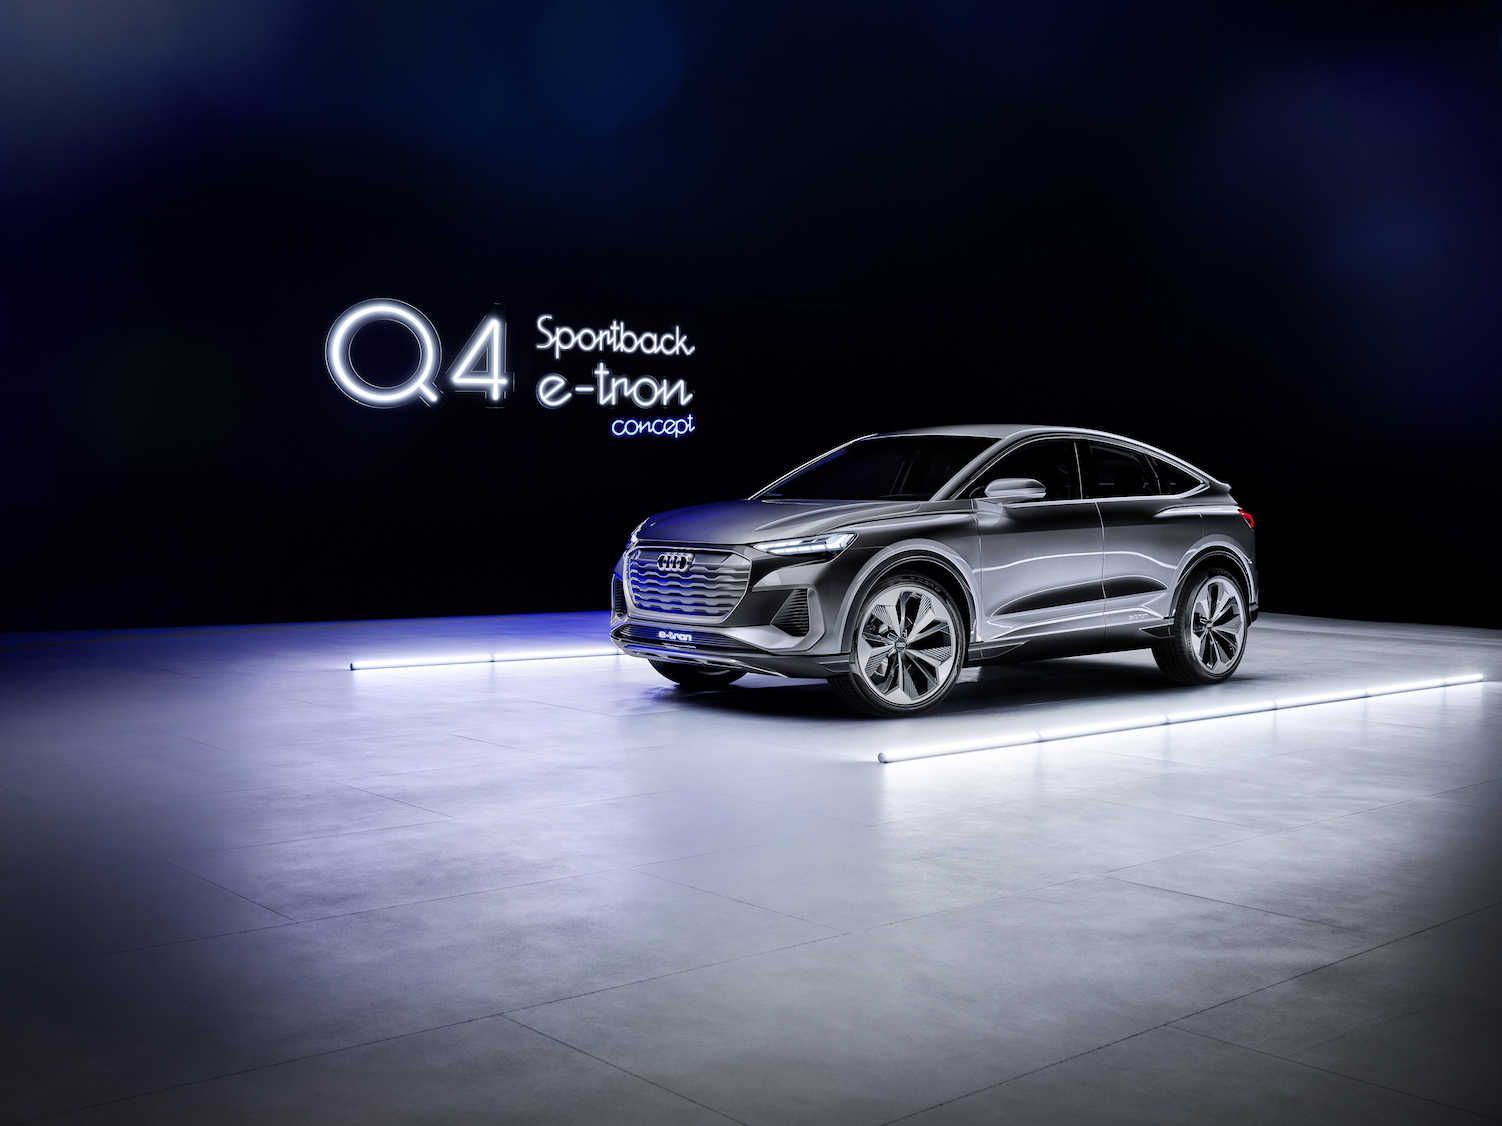 Audi présente le concept Q4 e-tron Sportback